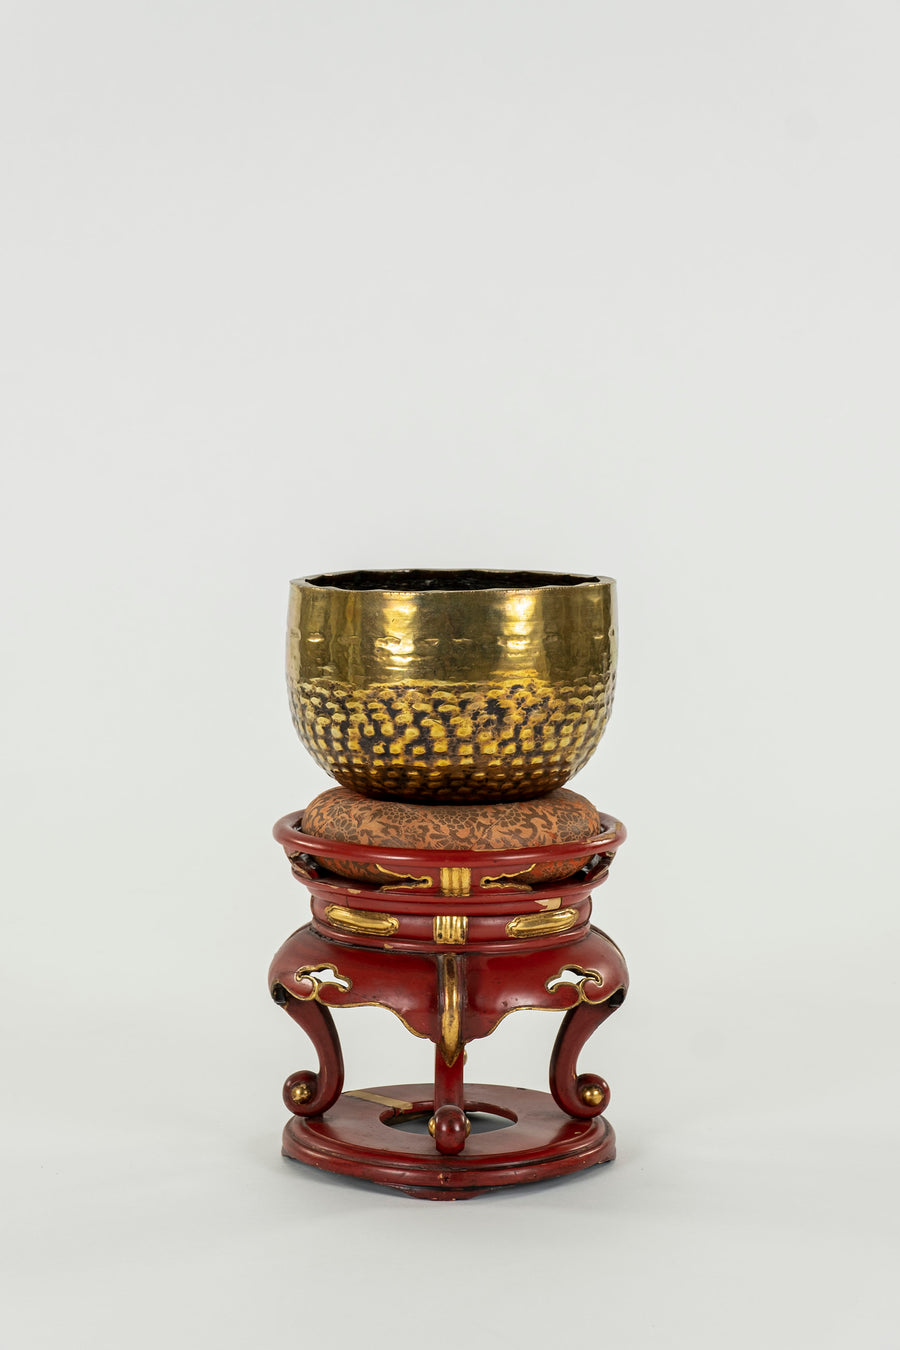 20th Century Tibetan Singing Bowl